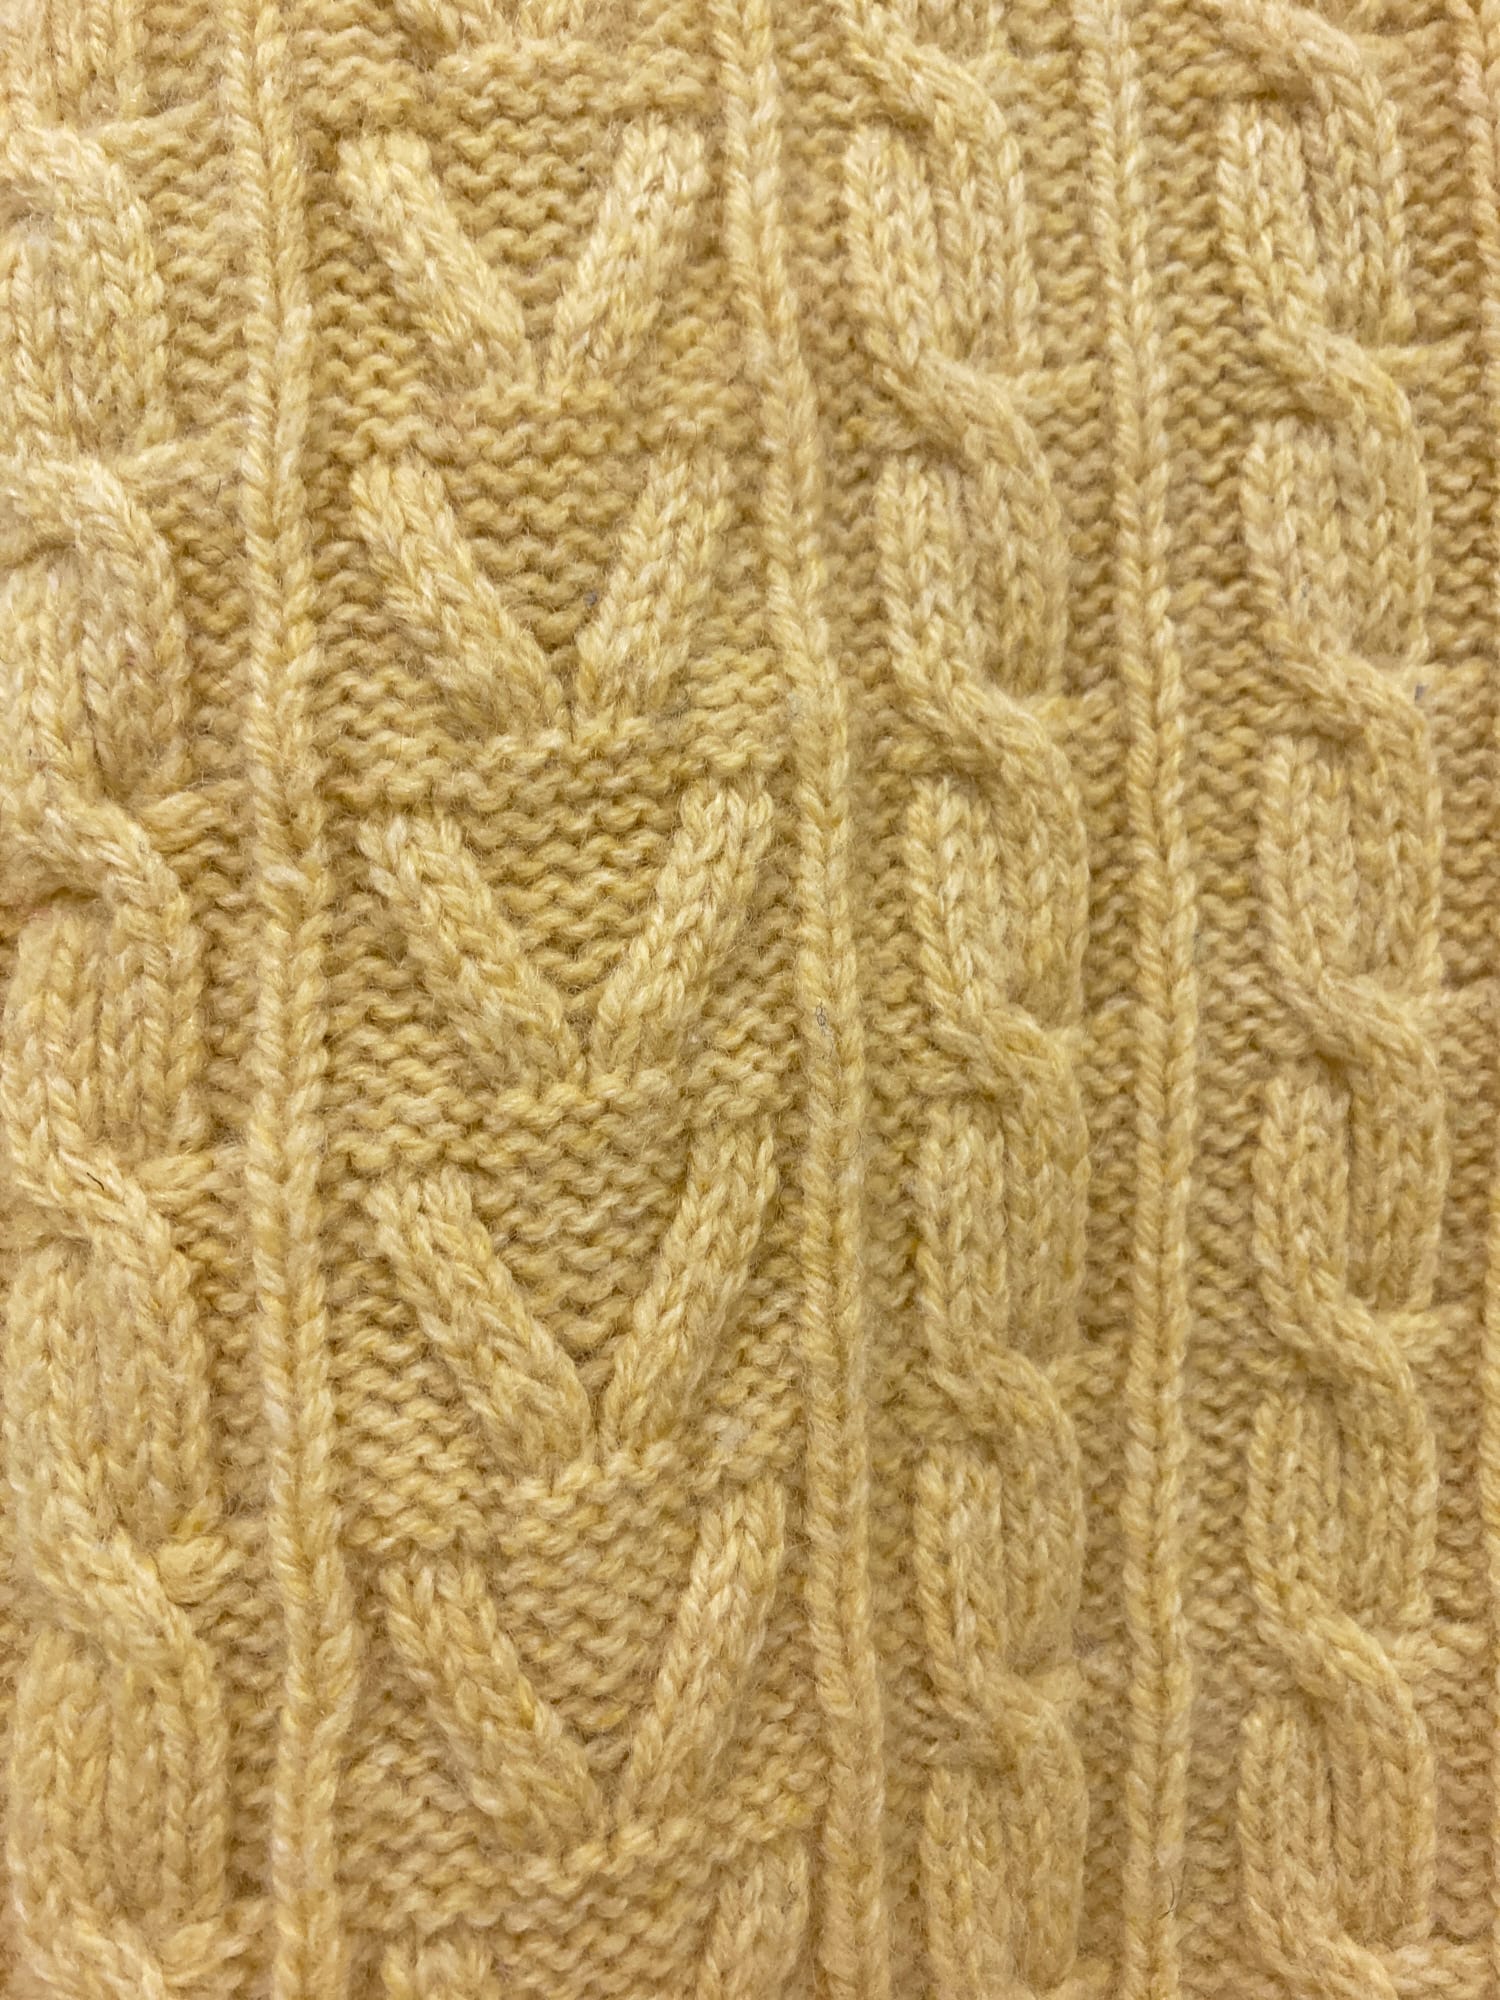 GR816 Gilles Rosier 1990s cream cable knit wool contrast trim v-neck jumper - 50